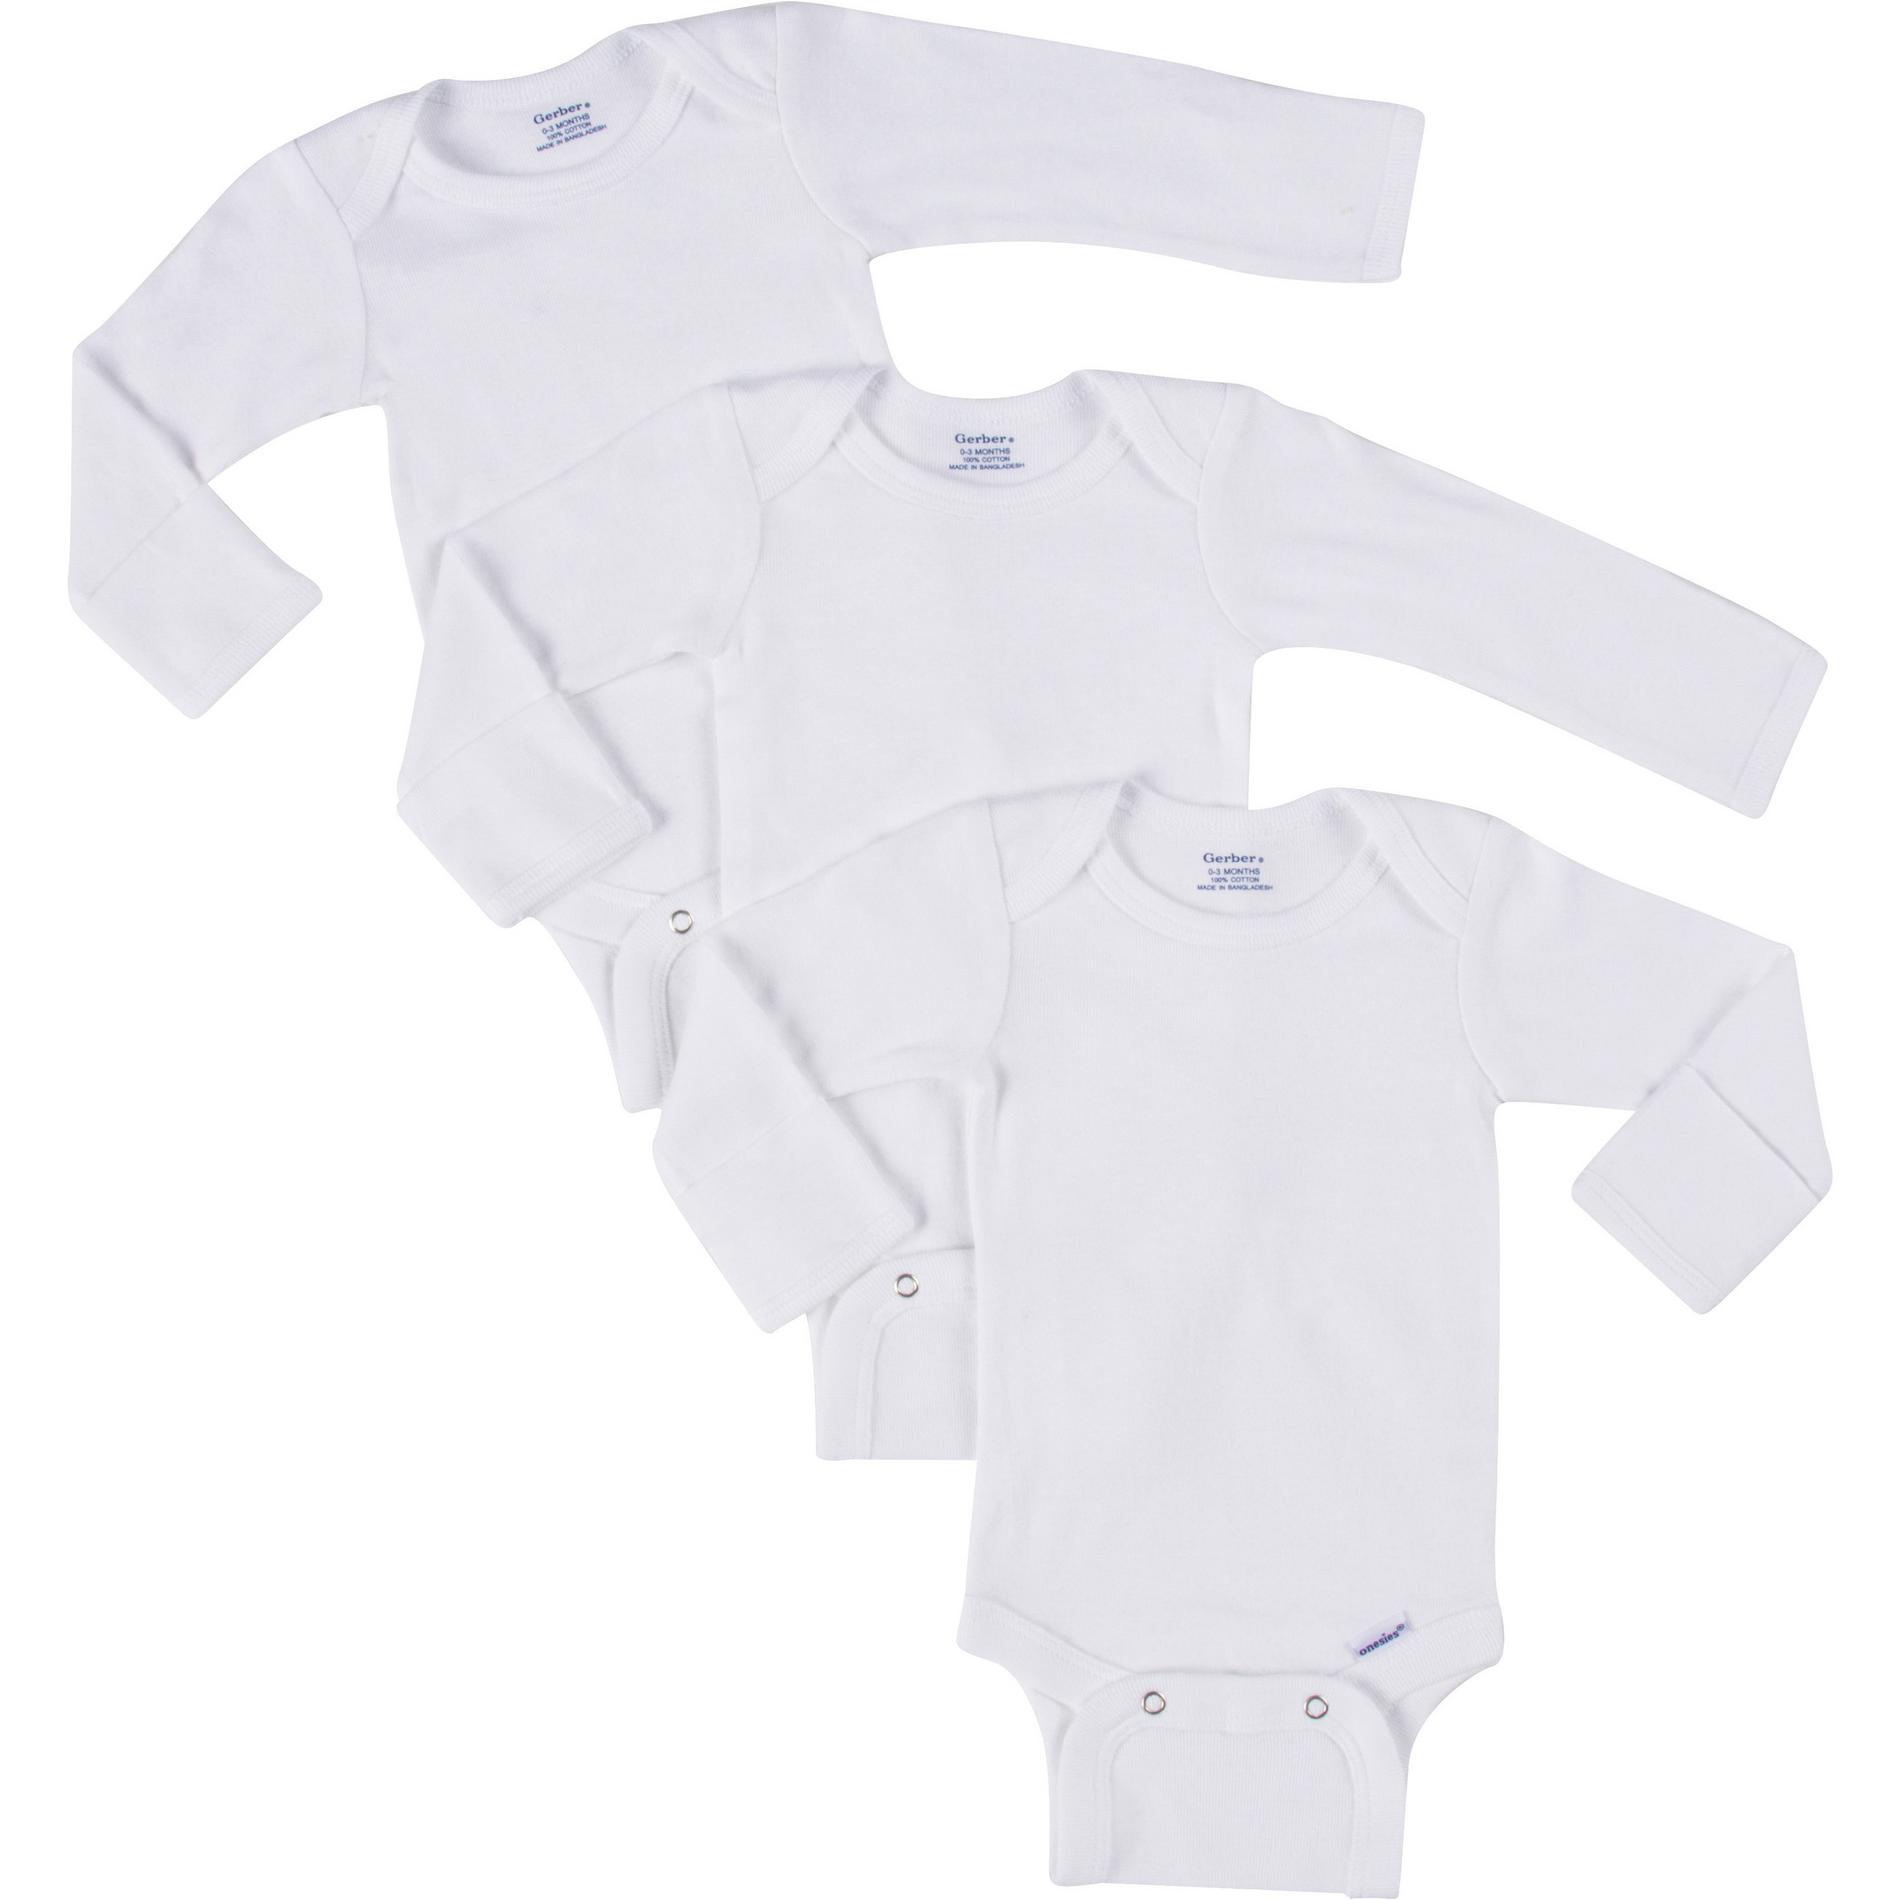 Gerber Newborn & Infant's 3-Pack Long-Sleeve Onesies